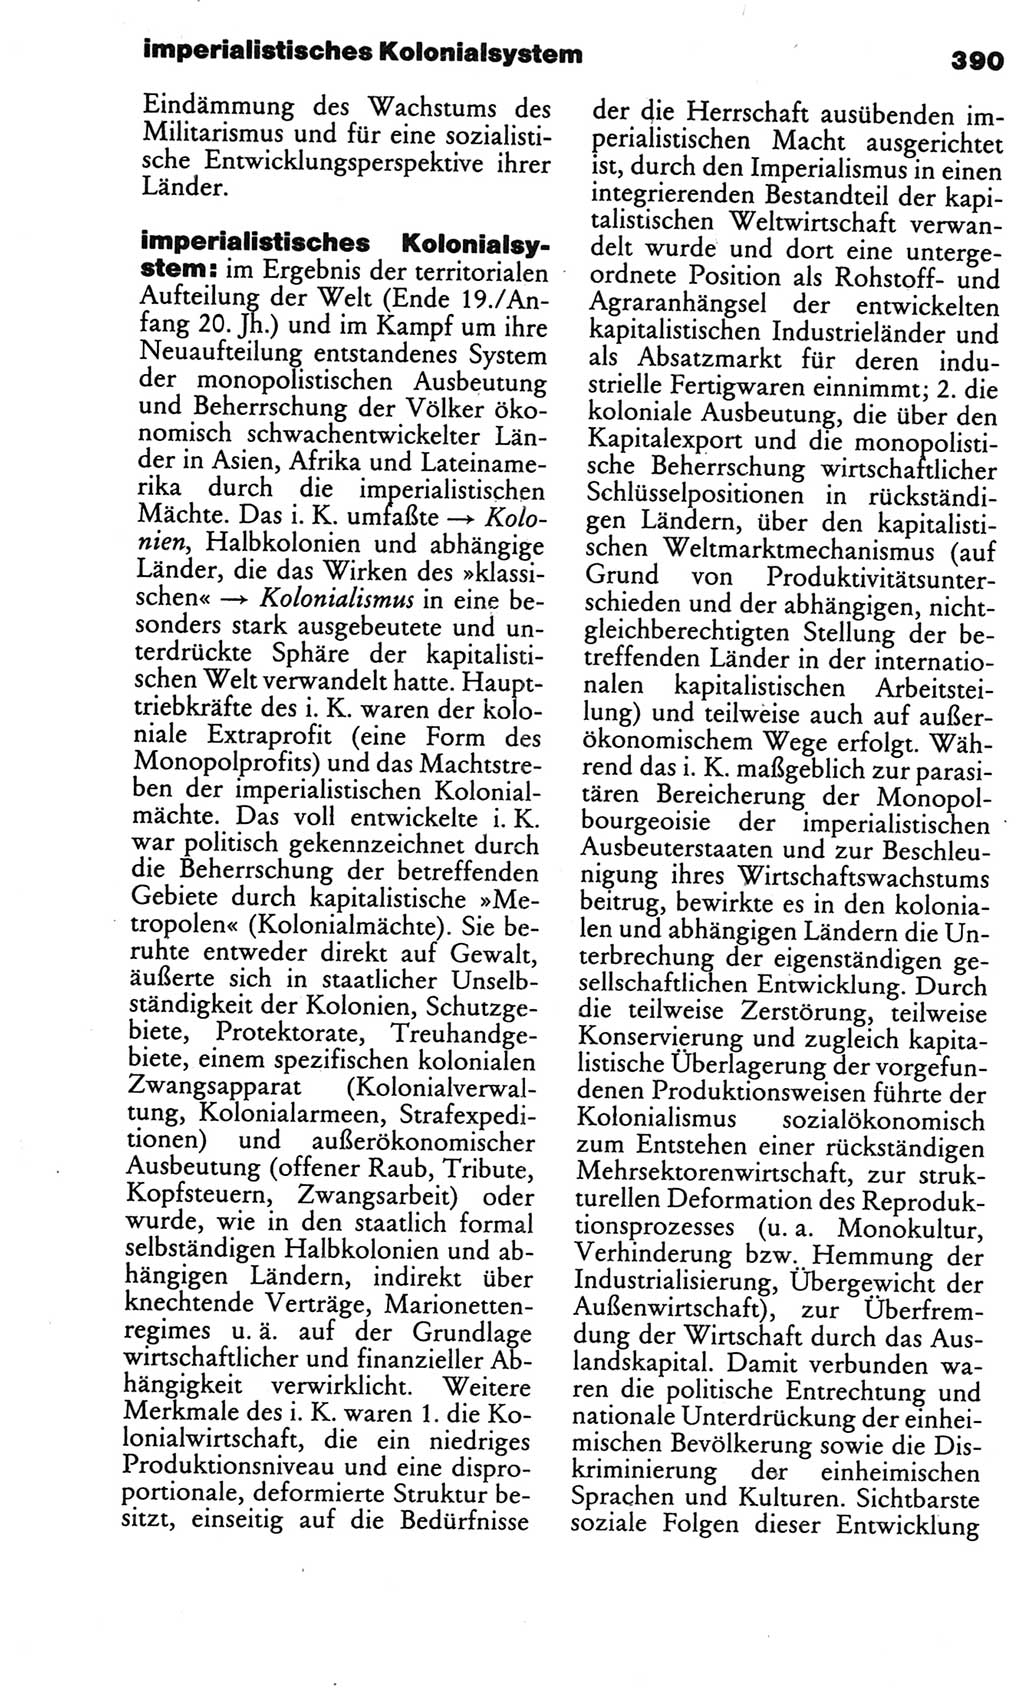 Kleines politisches Wörterbuch [Deutsche Demokratische Republik (DDR)] 1986, Seite 390 (Kl. pol. Wb. DDR 1986, S. 390)